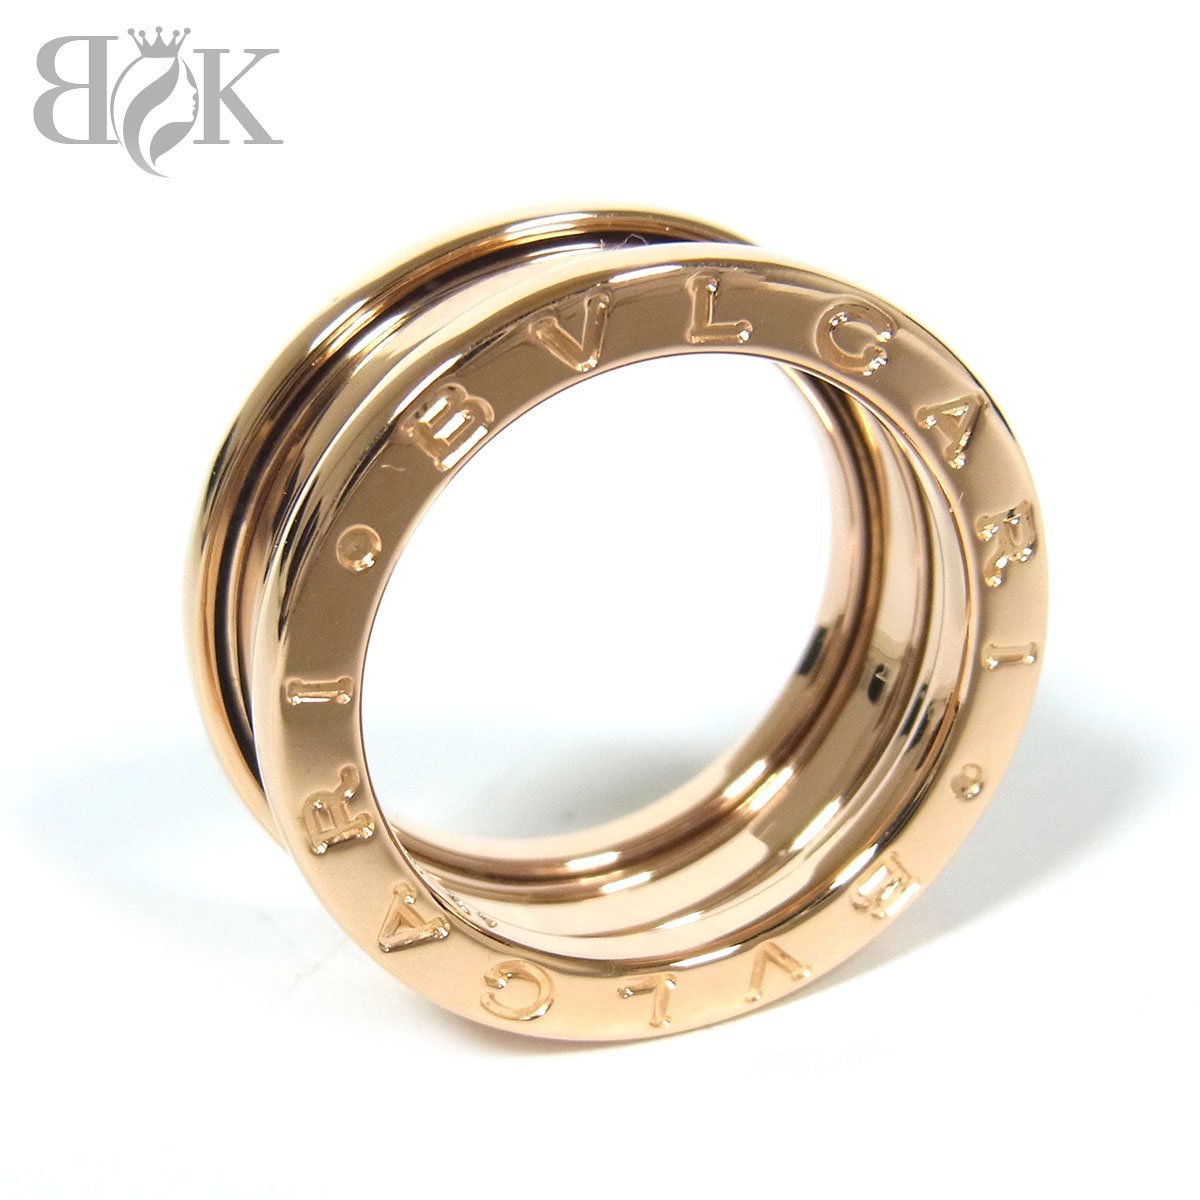 愛用 指輪 総重量約8.4g 表記サイズ49(約9号) ピンクゴールド 750